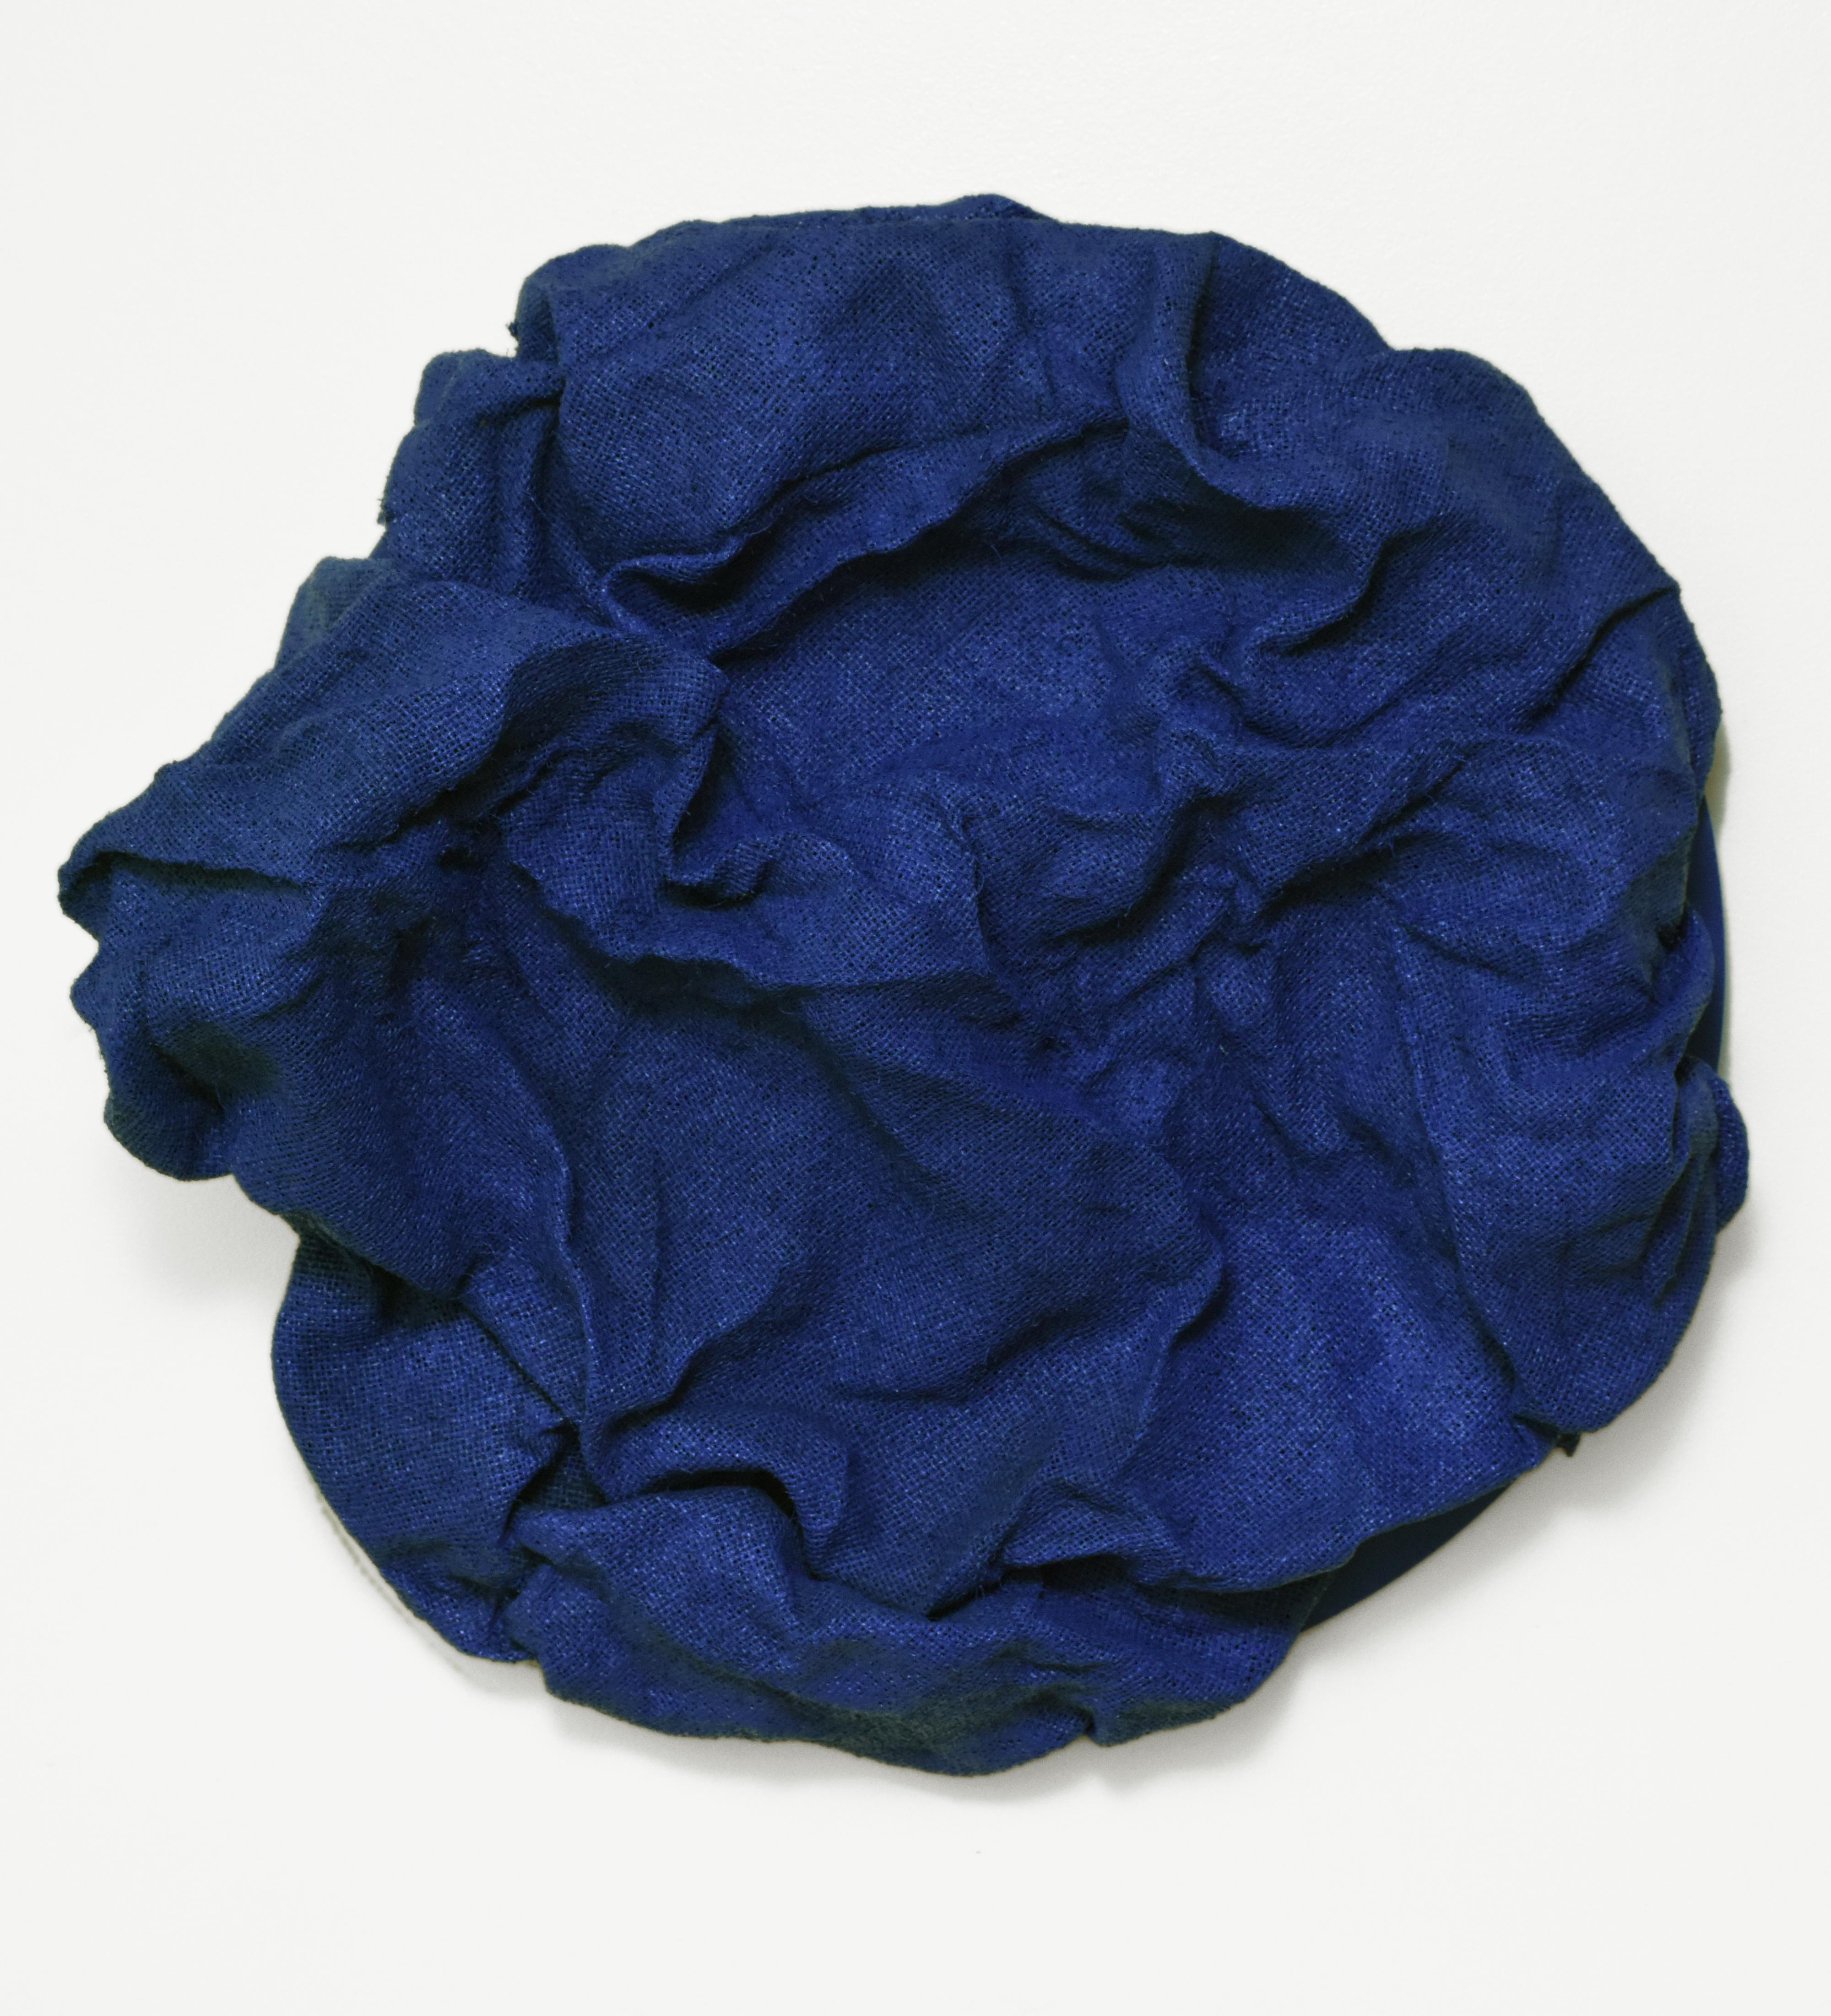 Fliesen in Marineblau (Marineblau, Dunkelblau, Hartstoff, zeitgenössisches Design, Textil